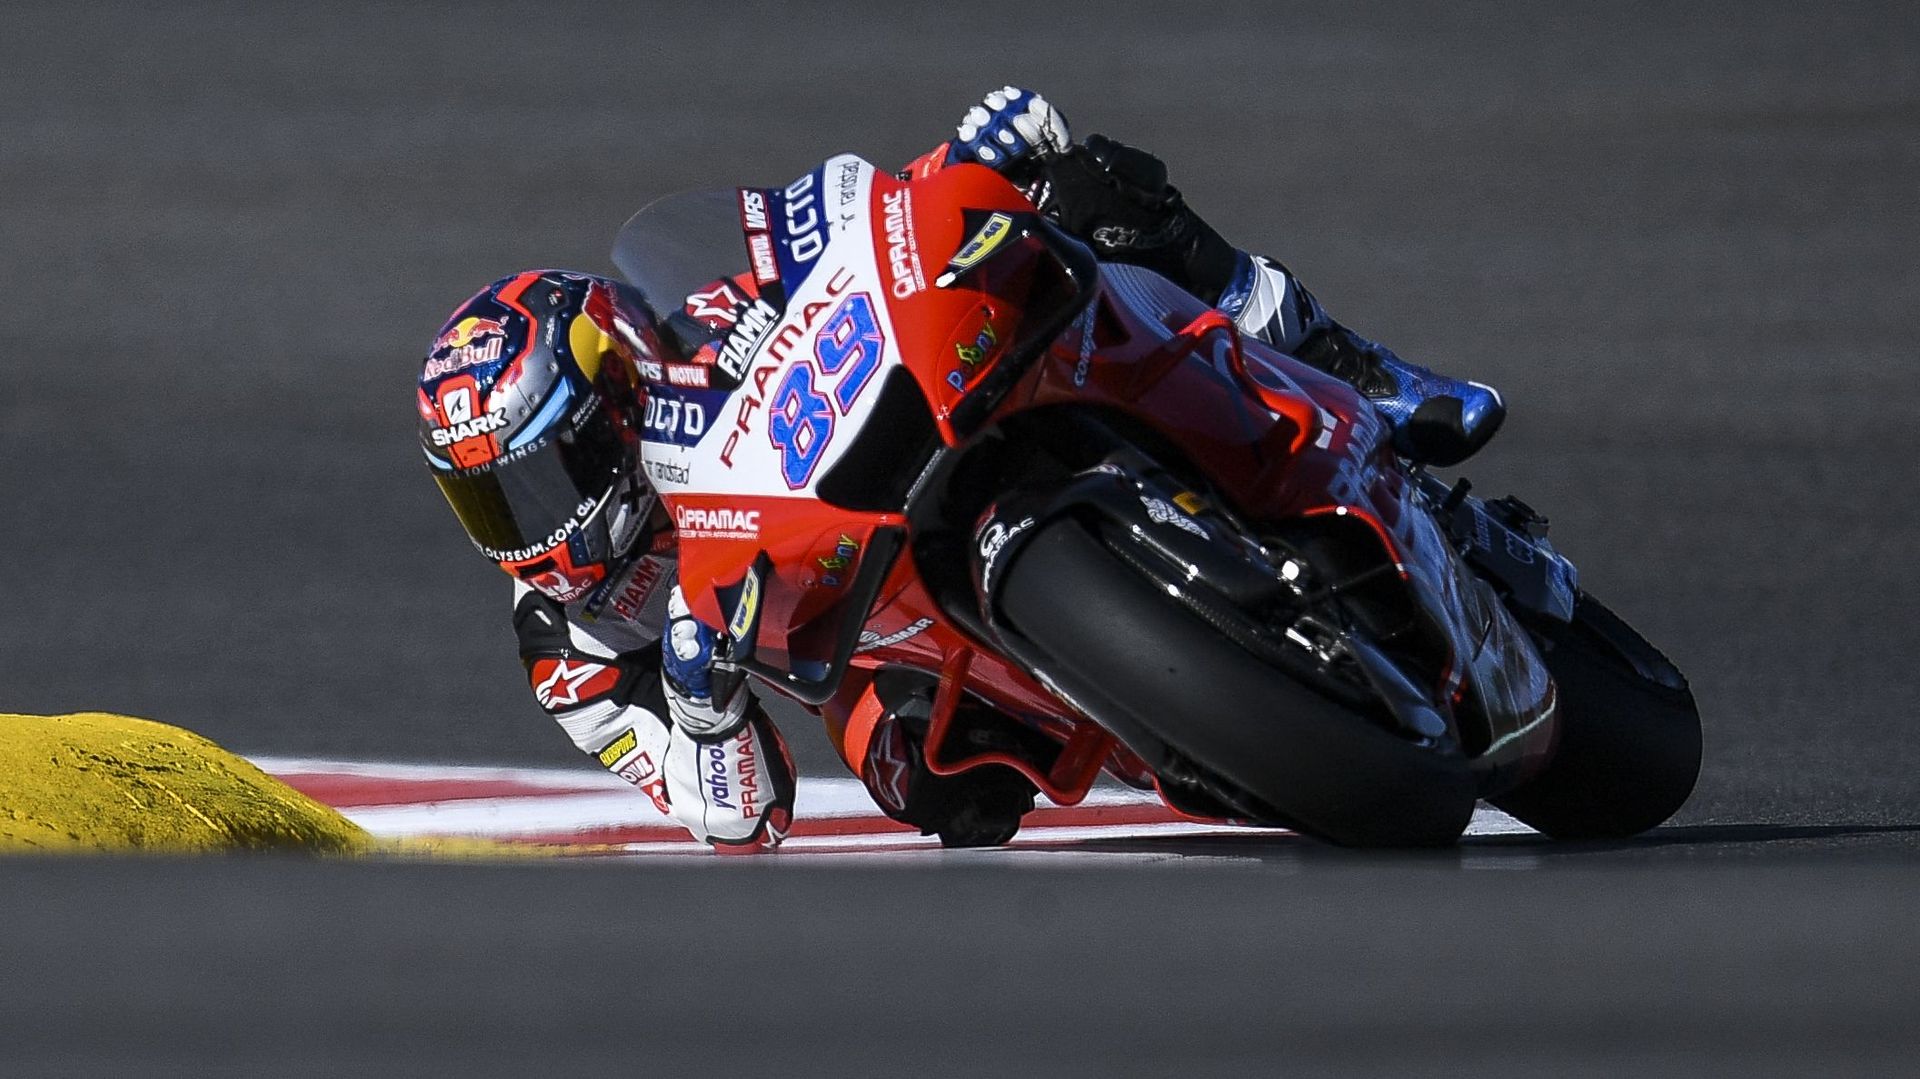 Quatrième pole de la saison pour Jorge Martin à Valence, 10e place pour Rossi